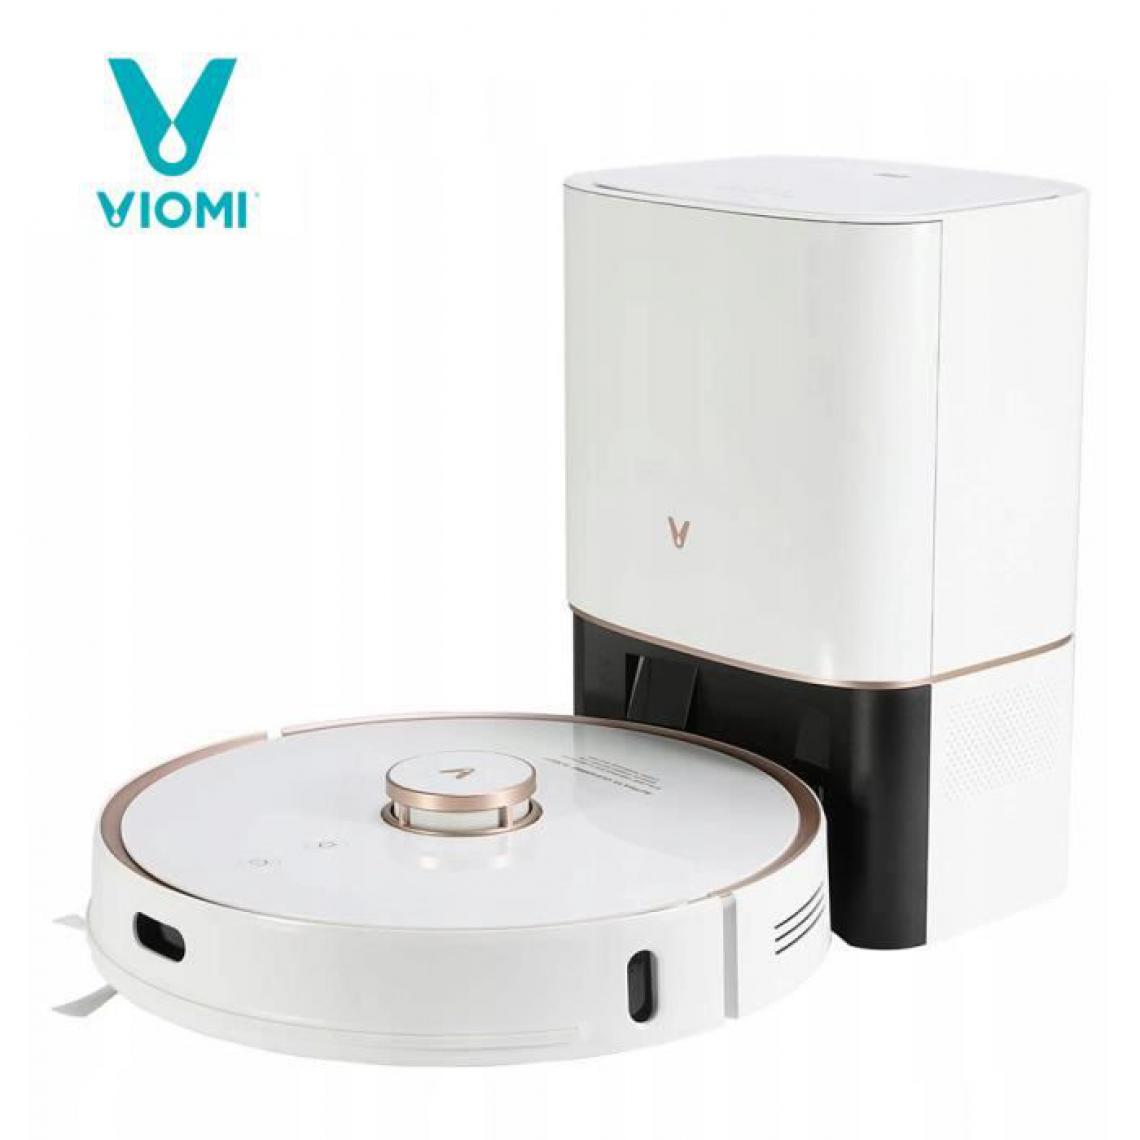 Viomi - Aspirateur robot Viomi S9 - Blanc - Aspirateur robot